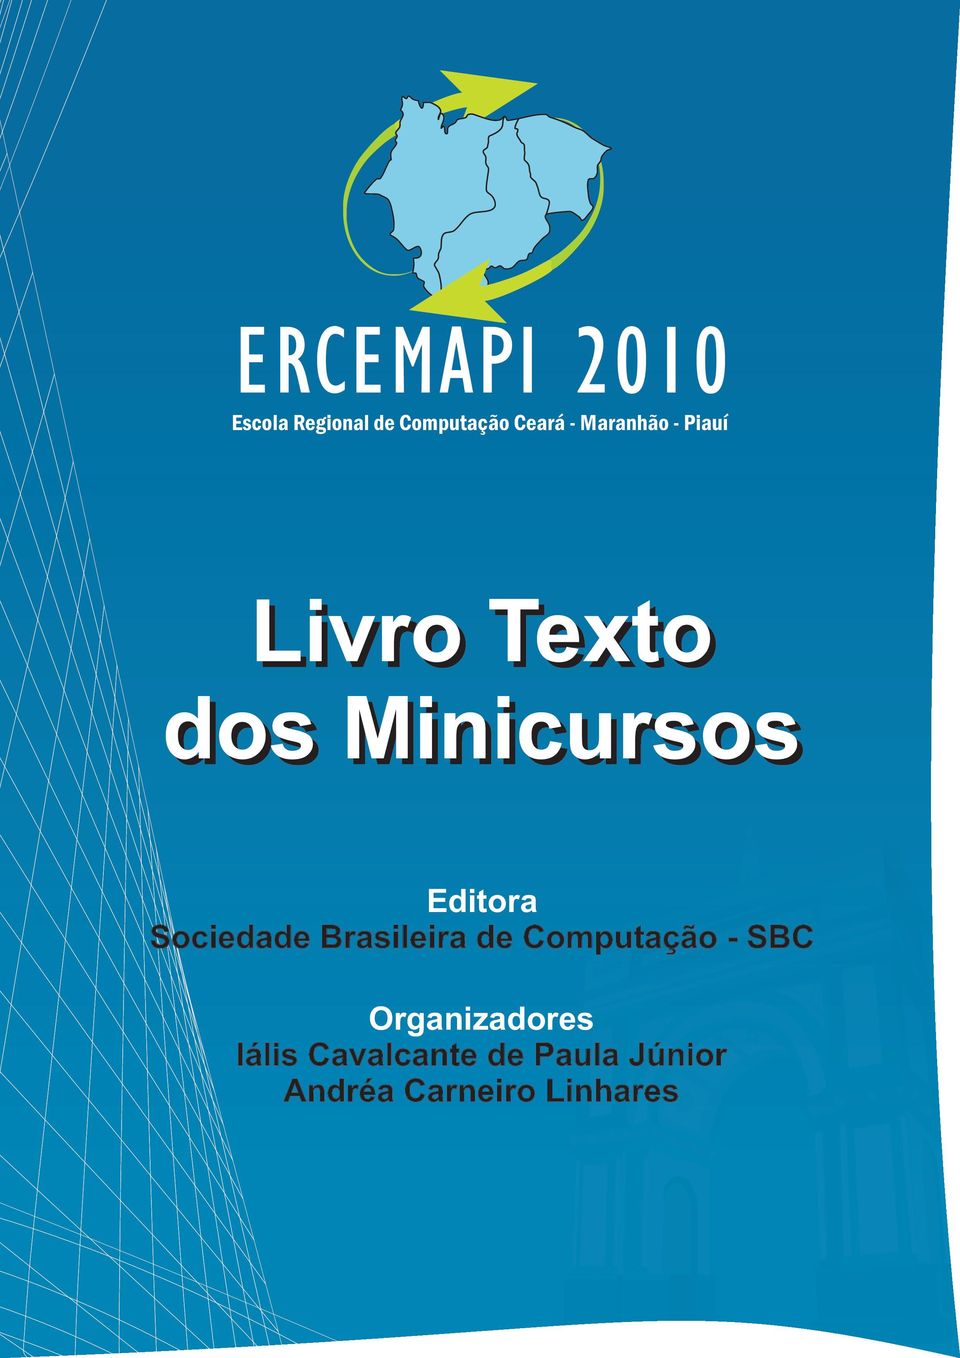 Sociedade Brasileira de Computação - SBC